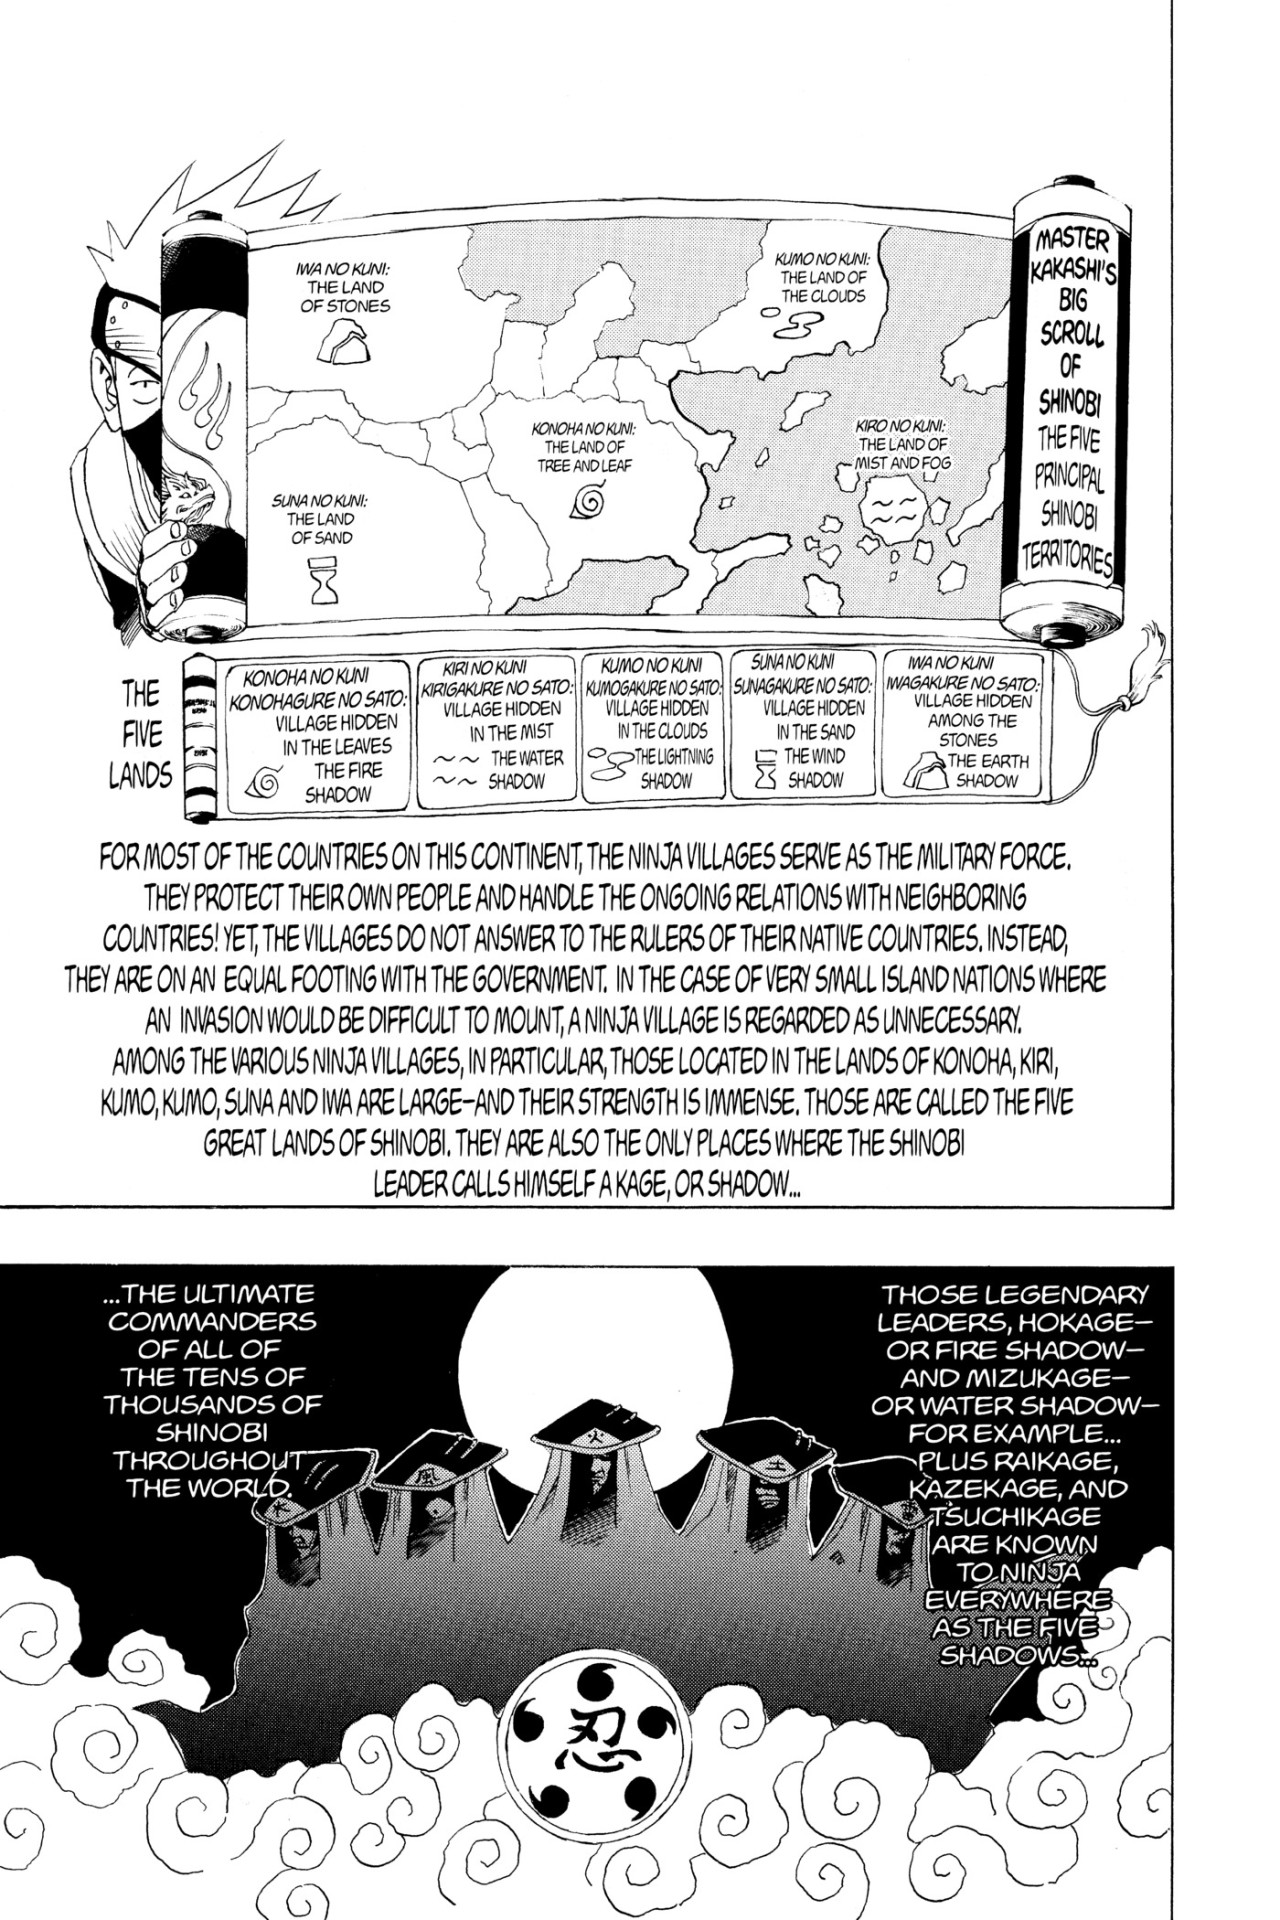 NARUTO Vol.2  NARUTO OFFICIAL SITE (NARUTO & BORUTO)